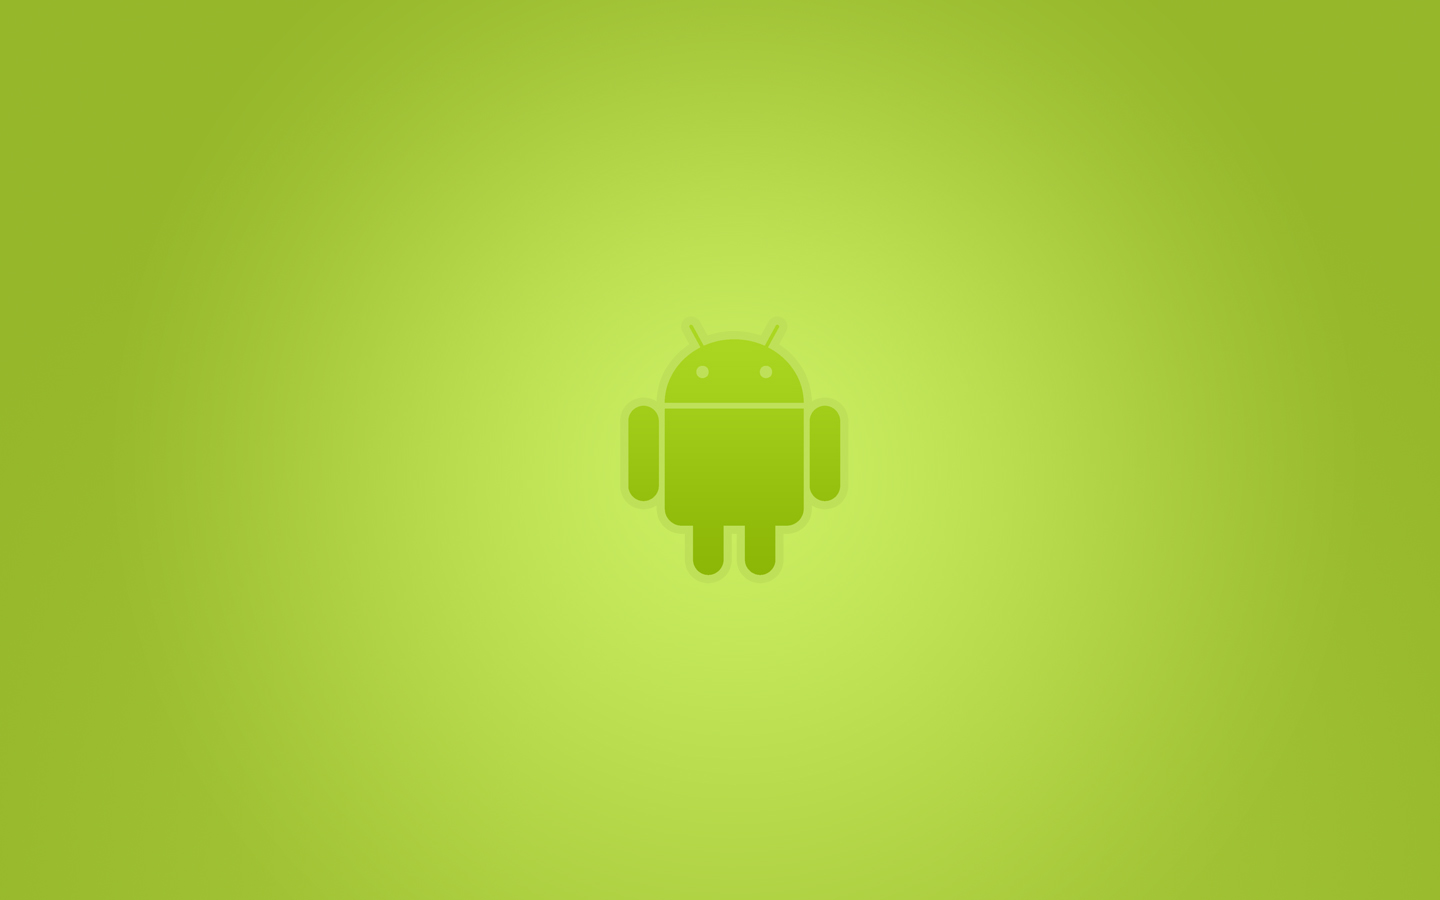 fond d'écran google pour android,vert,jaune,conception,illustration,la technologie